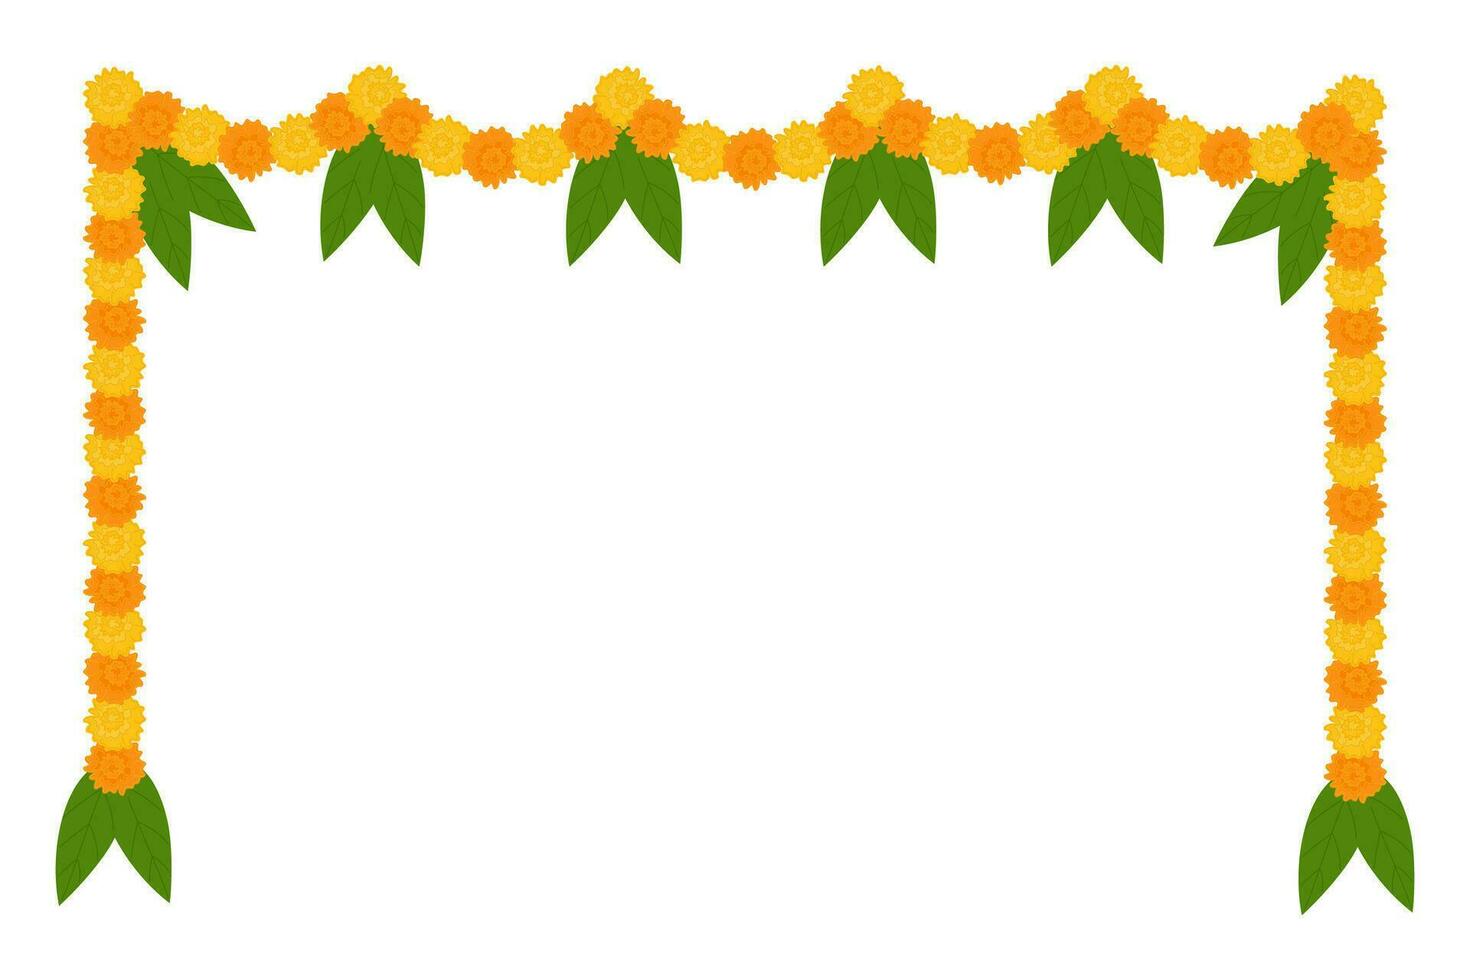 guirlanda de flores indianas tradicionais com flores de calêndula e folhas de manga. decoração para feriados hindus indianos. ilustração vetorial isolada no fundo branco. vetor